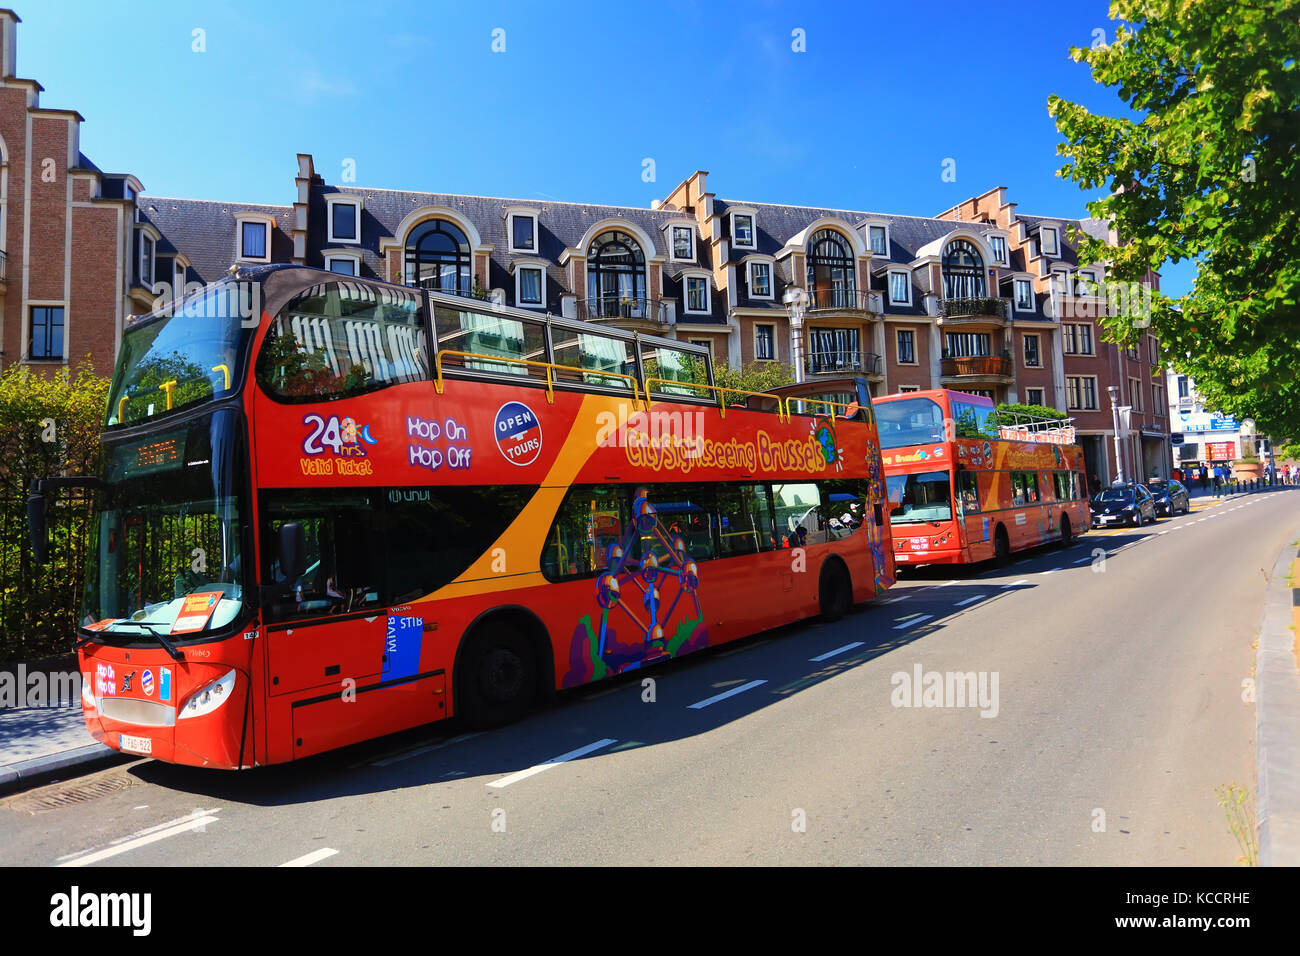 Bruselas, Bélgica - Julio 17, 2017: red de autobuses de excursión a la ciudad de Bruselas. La famosa "hop-on hop-off autobuses turísticos en un día soleado en Bruselas. Foto de stock